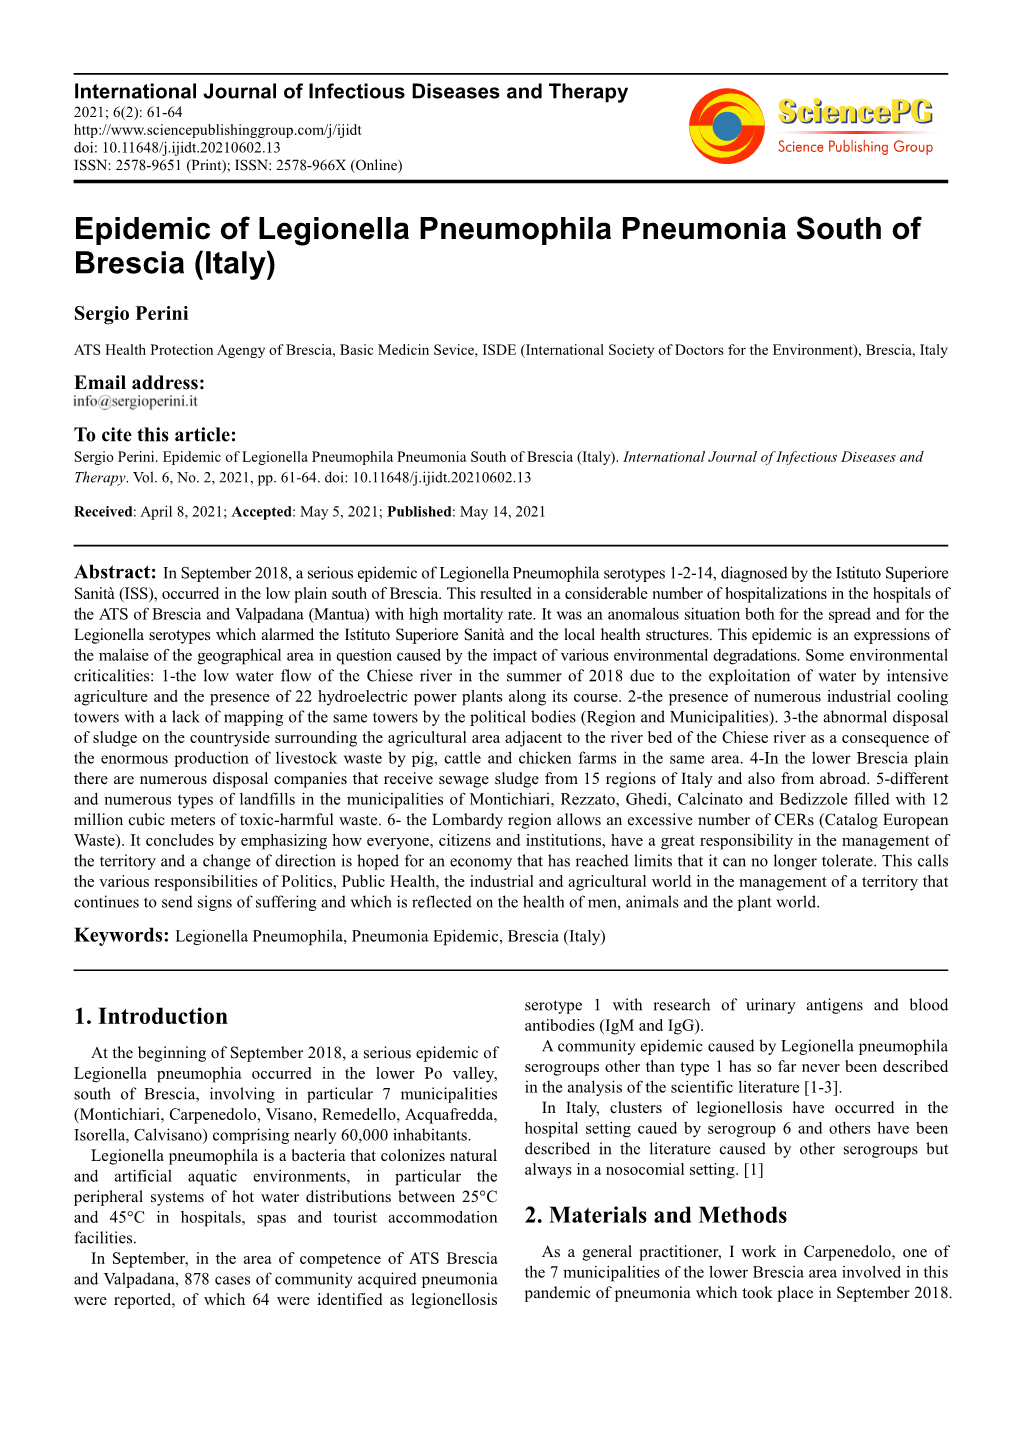 Epidemic of Legionella Pneumophila Pneumonia South of Brescia (Italy)